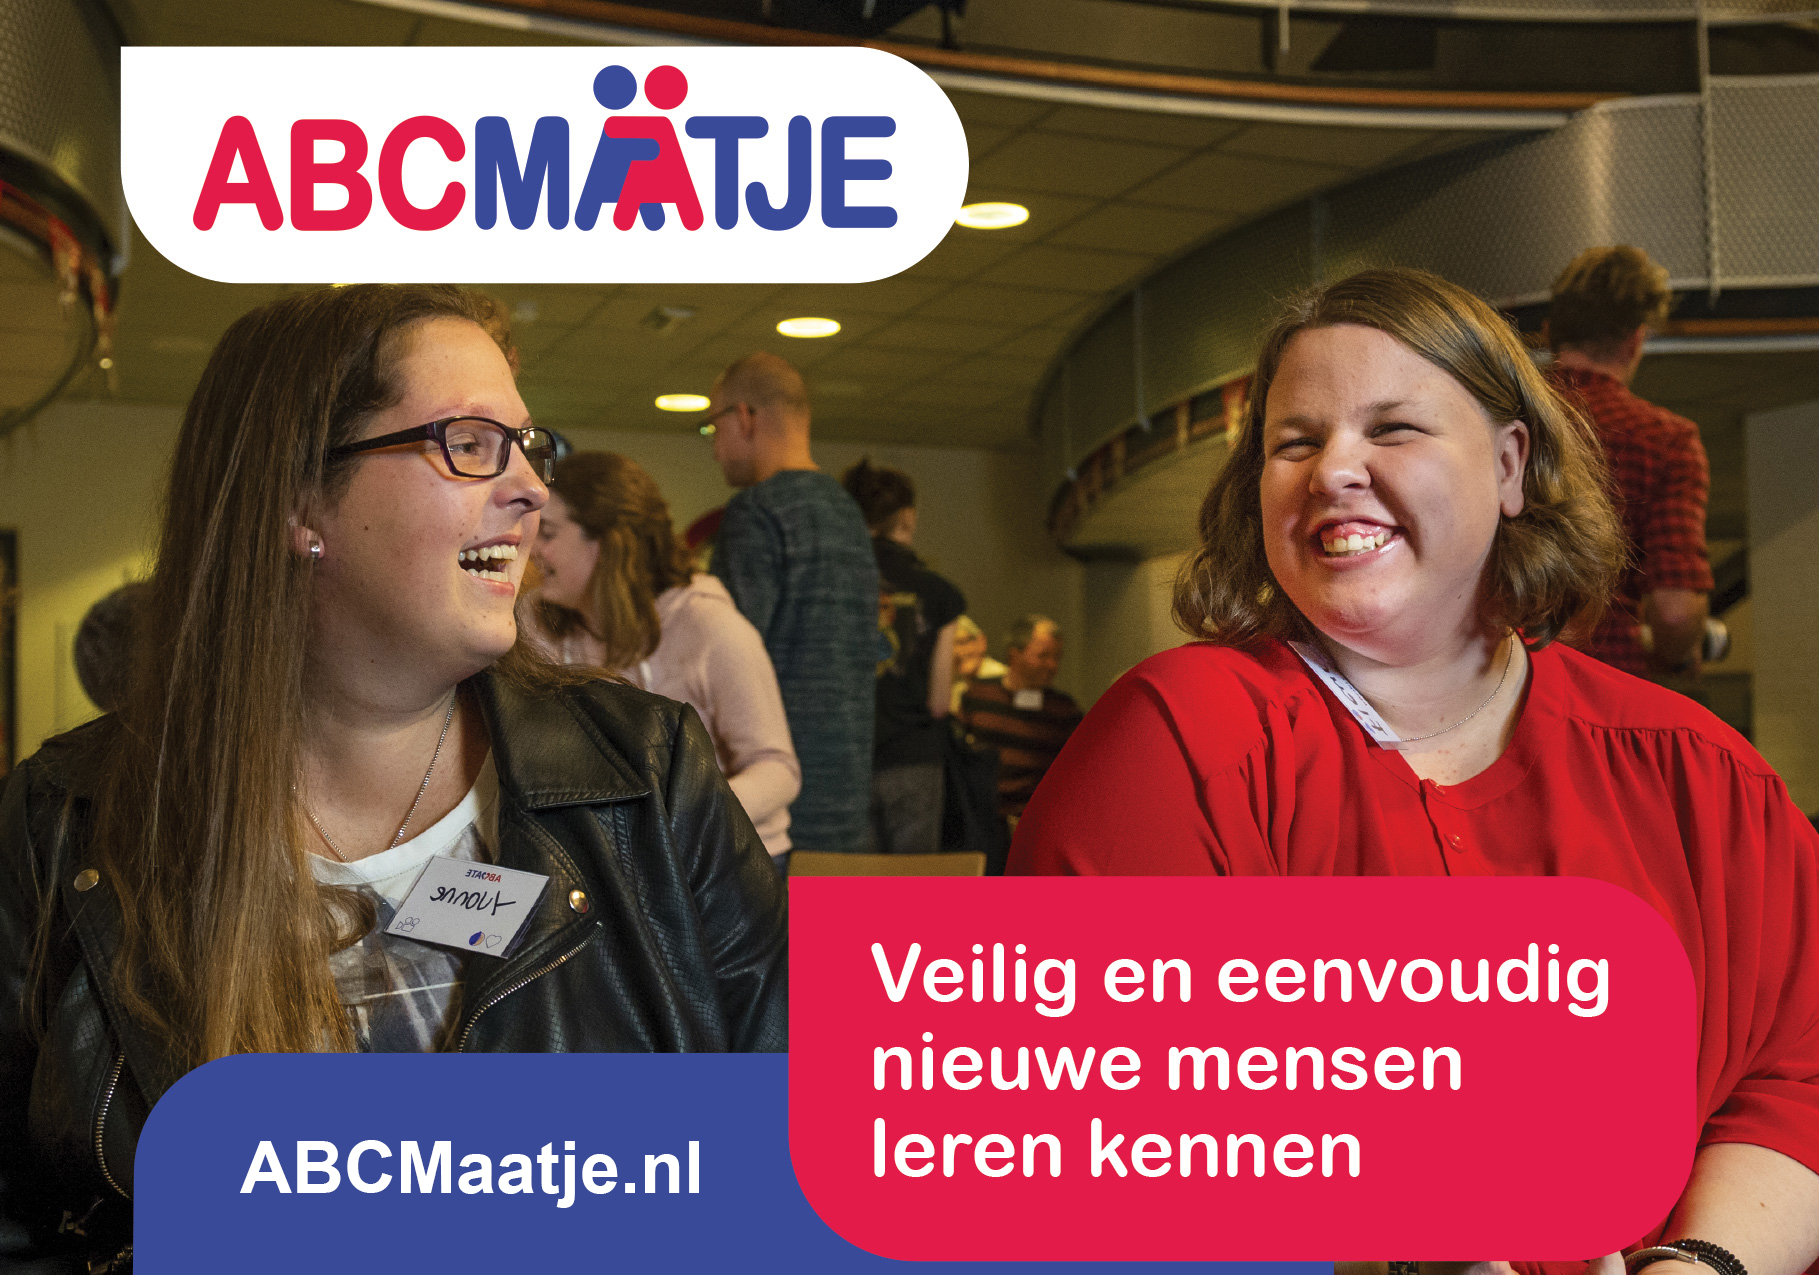 Veilig nieuwe mensen leren kennen doe je met ABCMaatje.nl